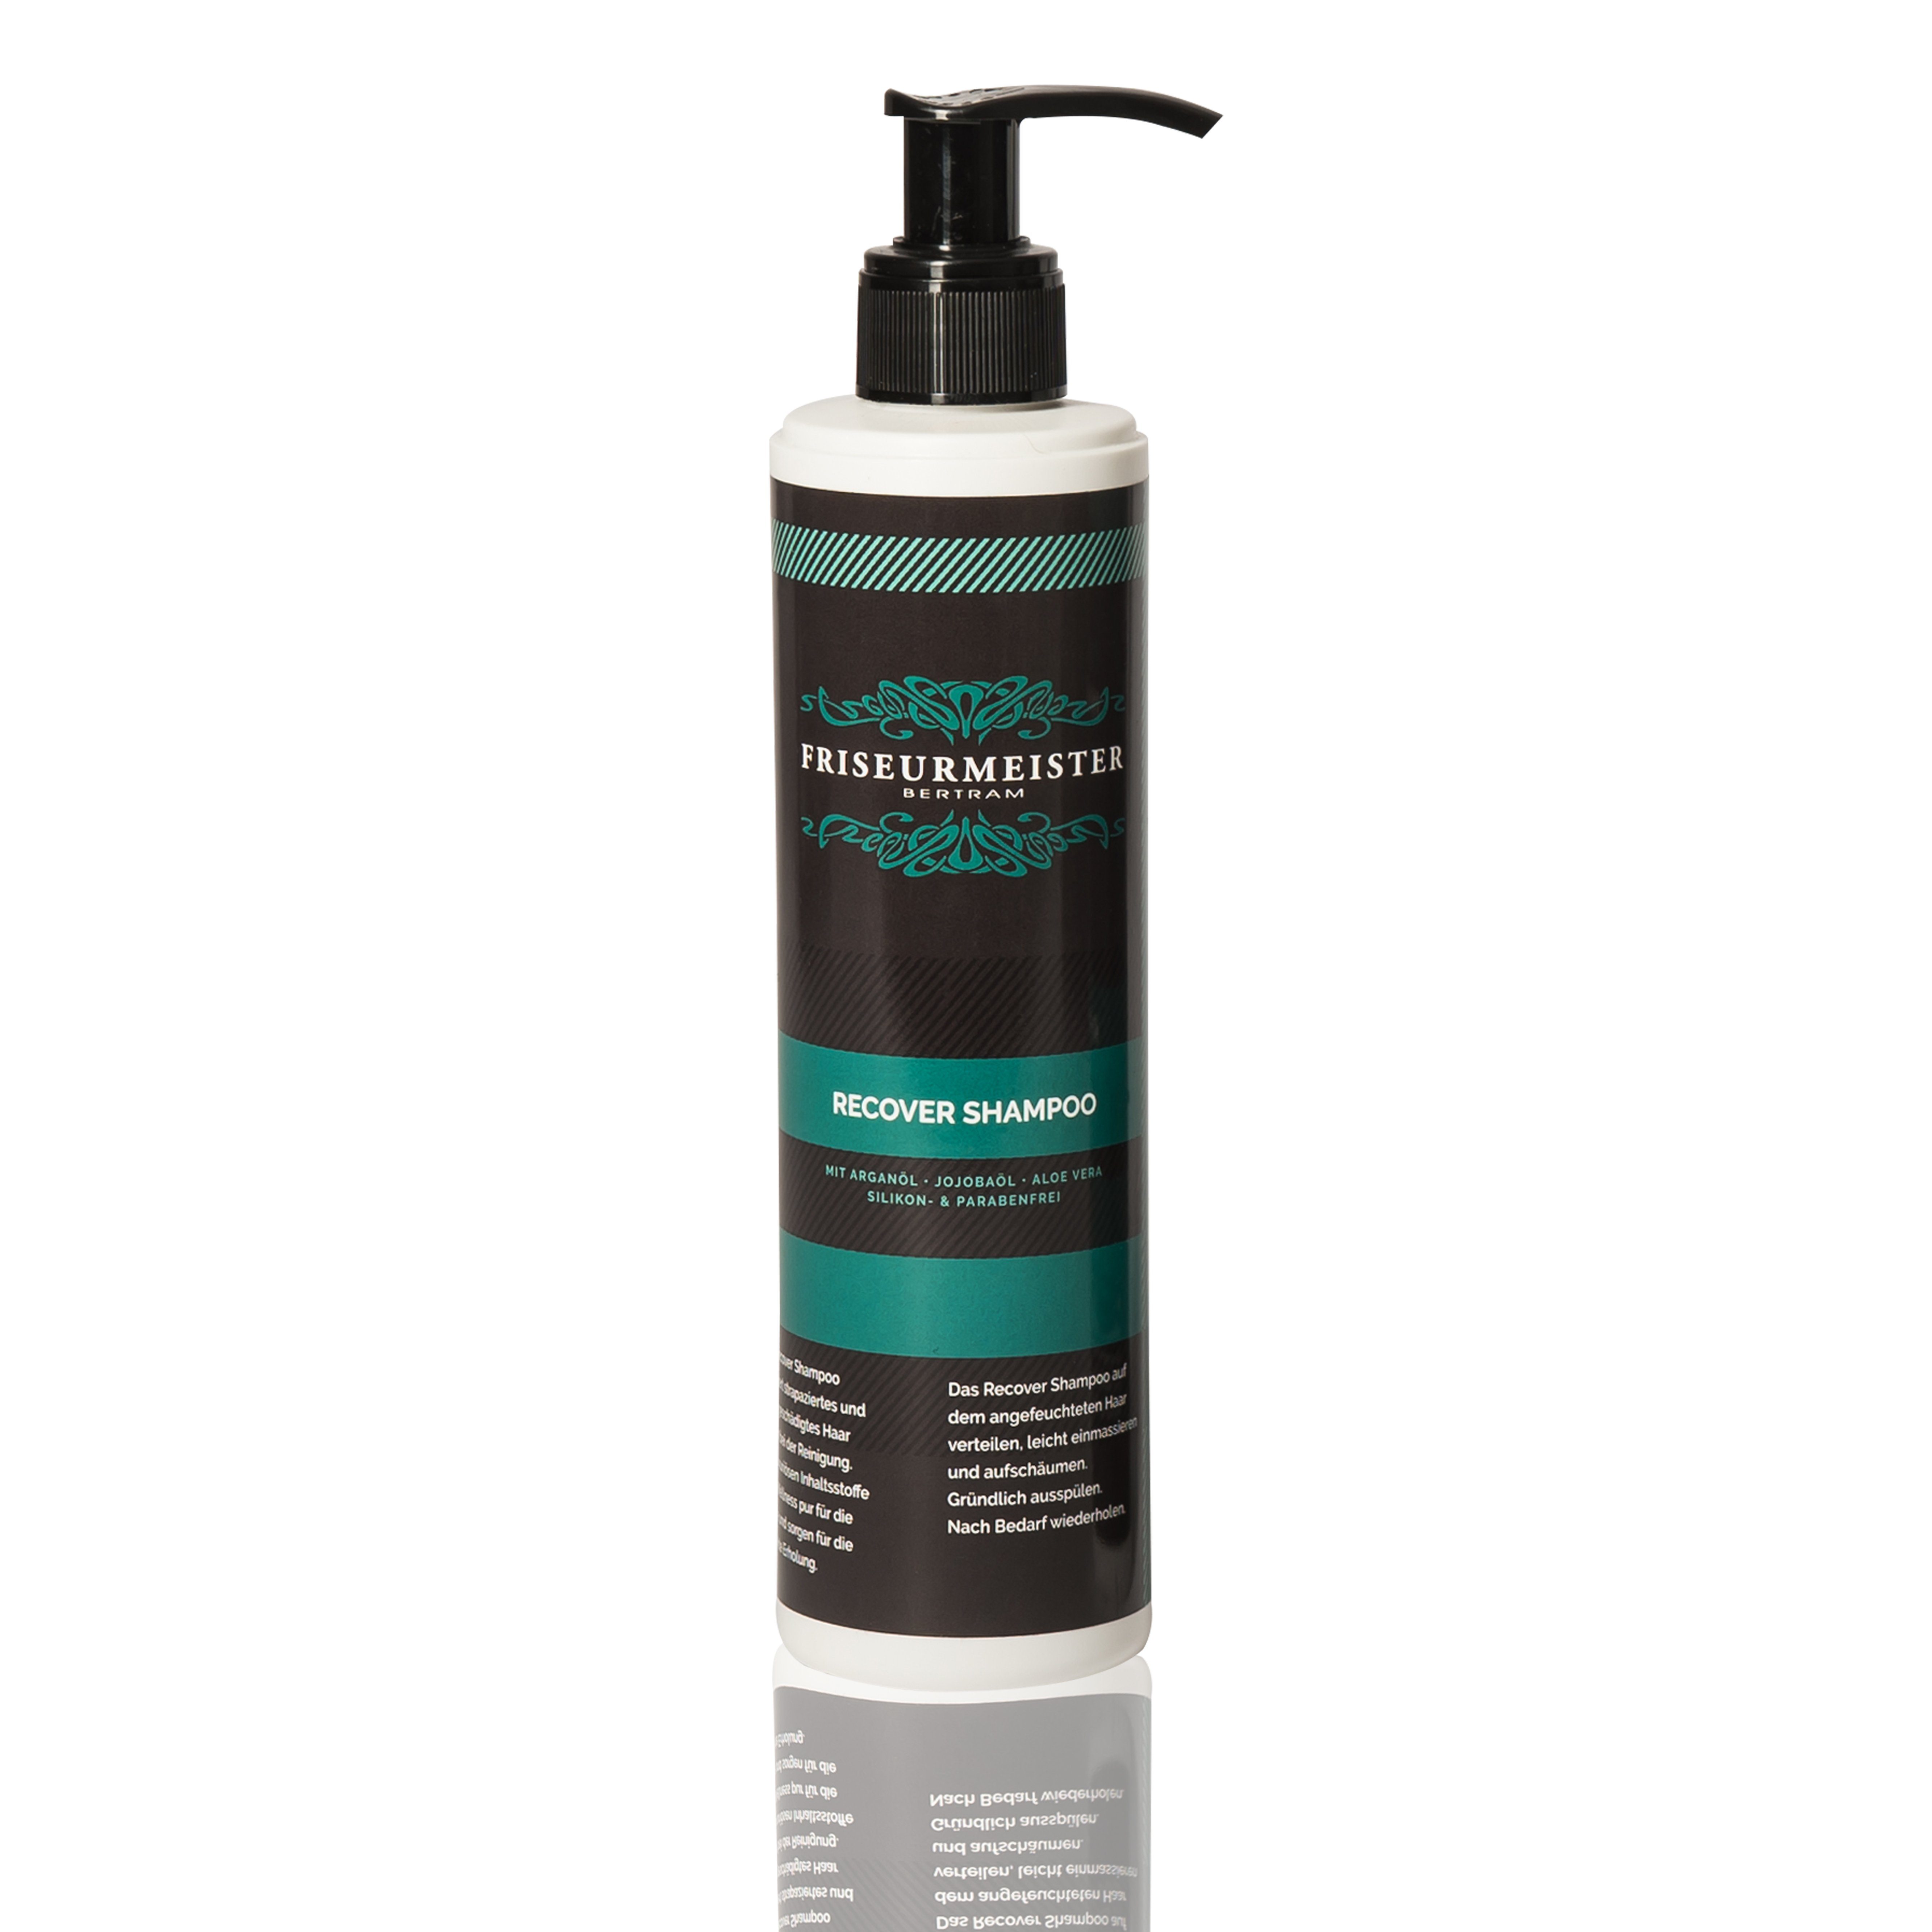 Friseurmeister Haarshampoo Recover Shampoo mit Arganöl, Jojobaöl, Aloe Vera, Silikon, und Parabenfrei für Alle Haartypen 250ml